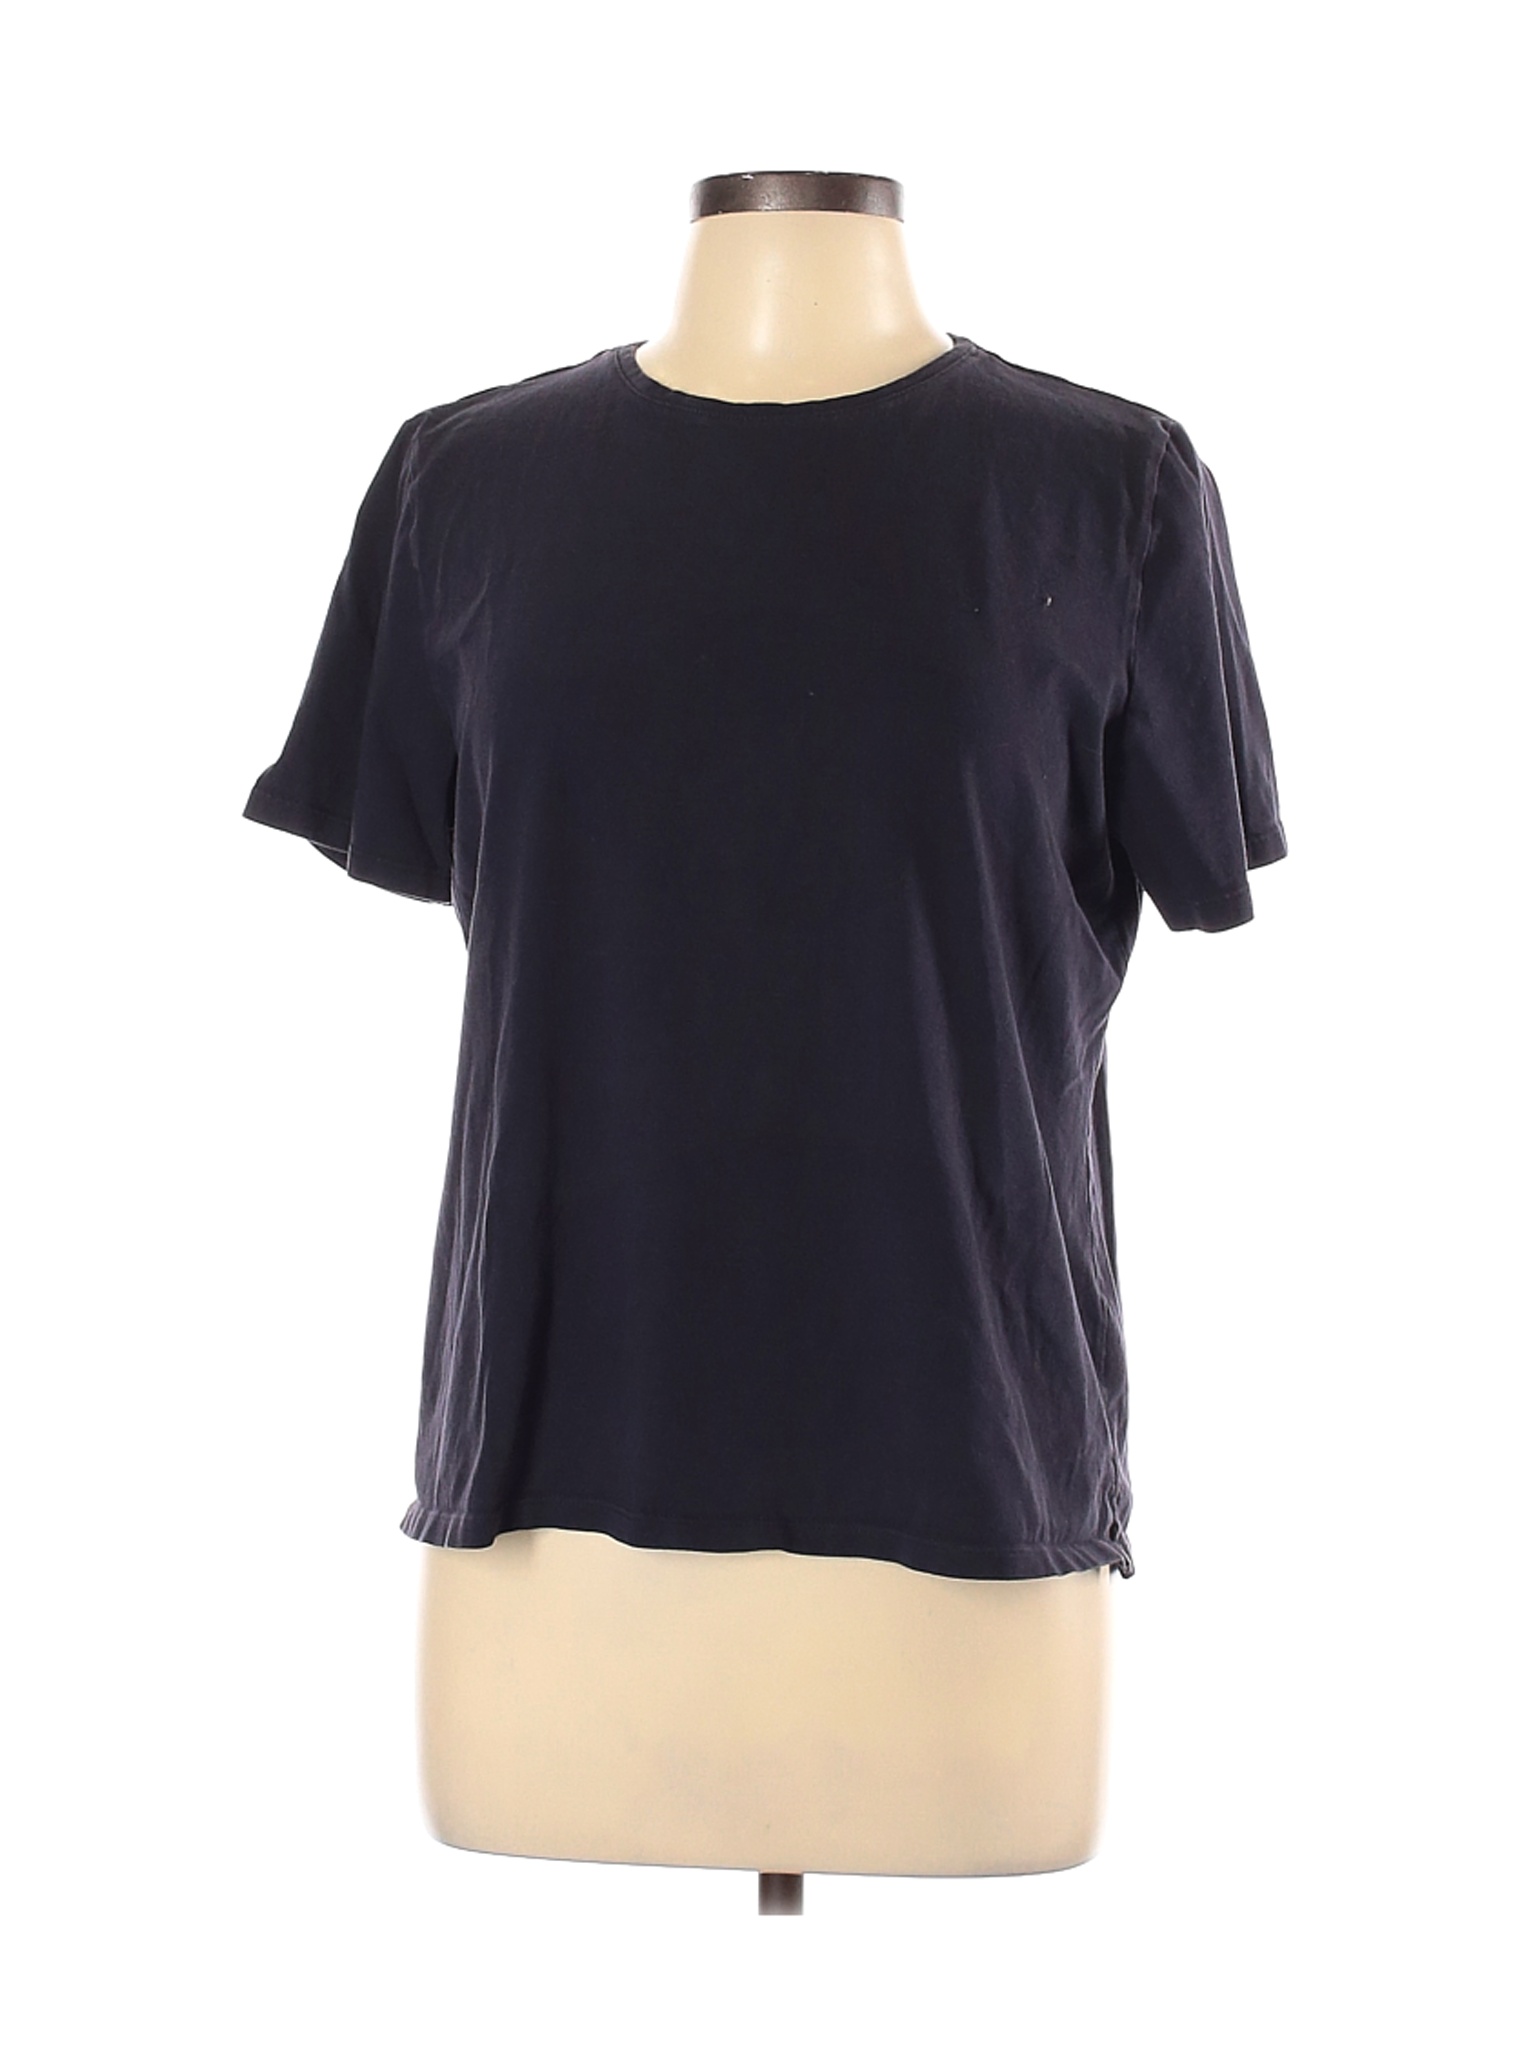 Lands' End Women Blue Short Sleeve T-Shirt L | eBay